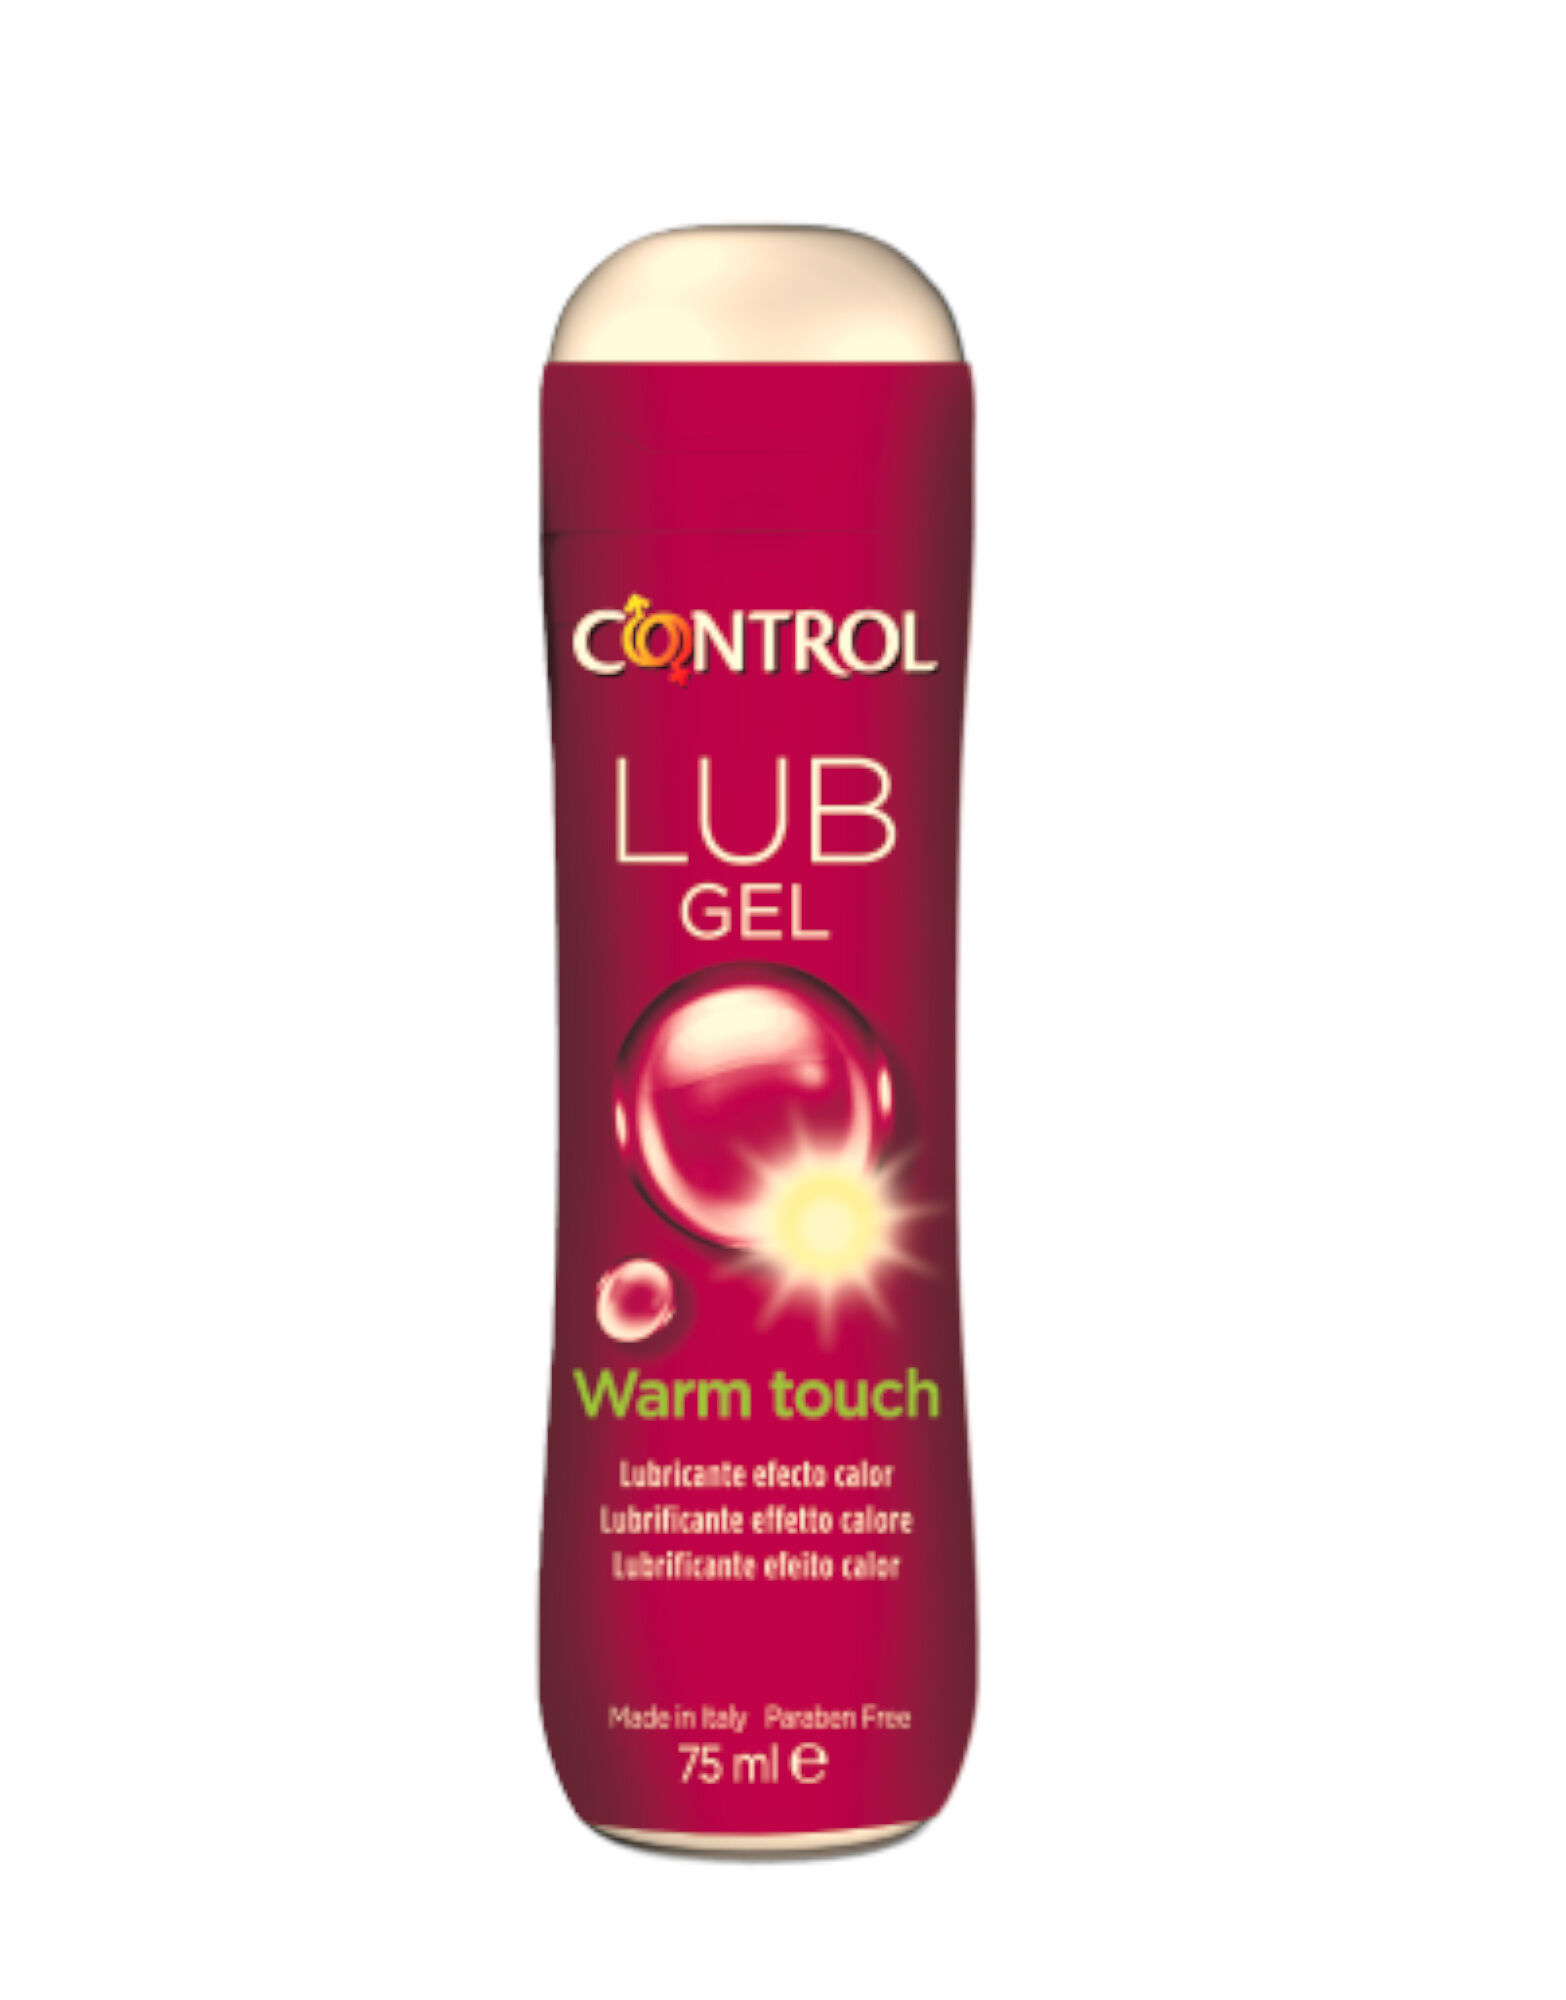 CONTROL Lub Gel Warm Touch 75ml